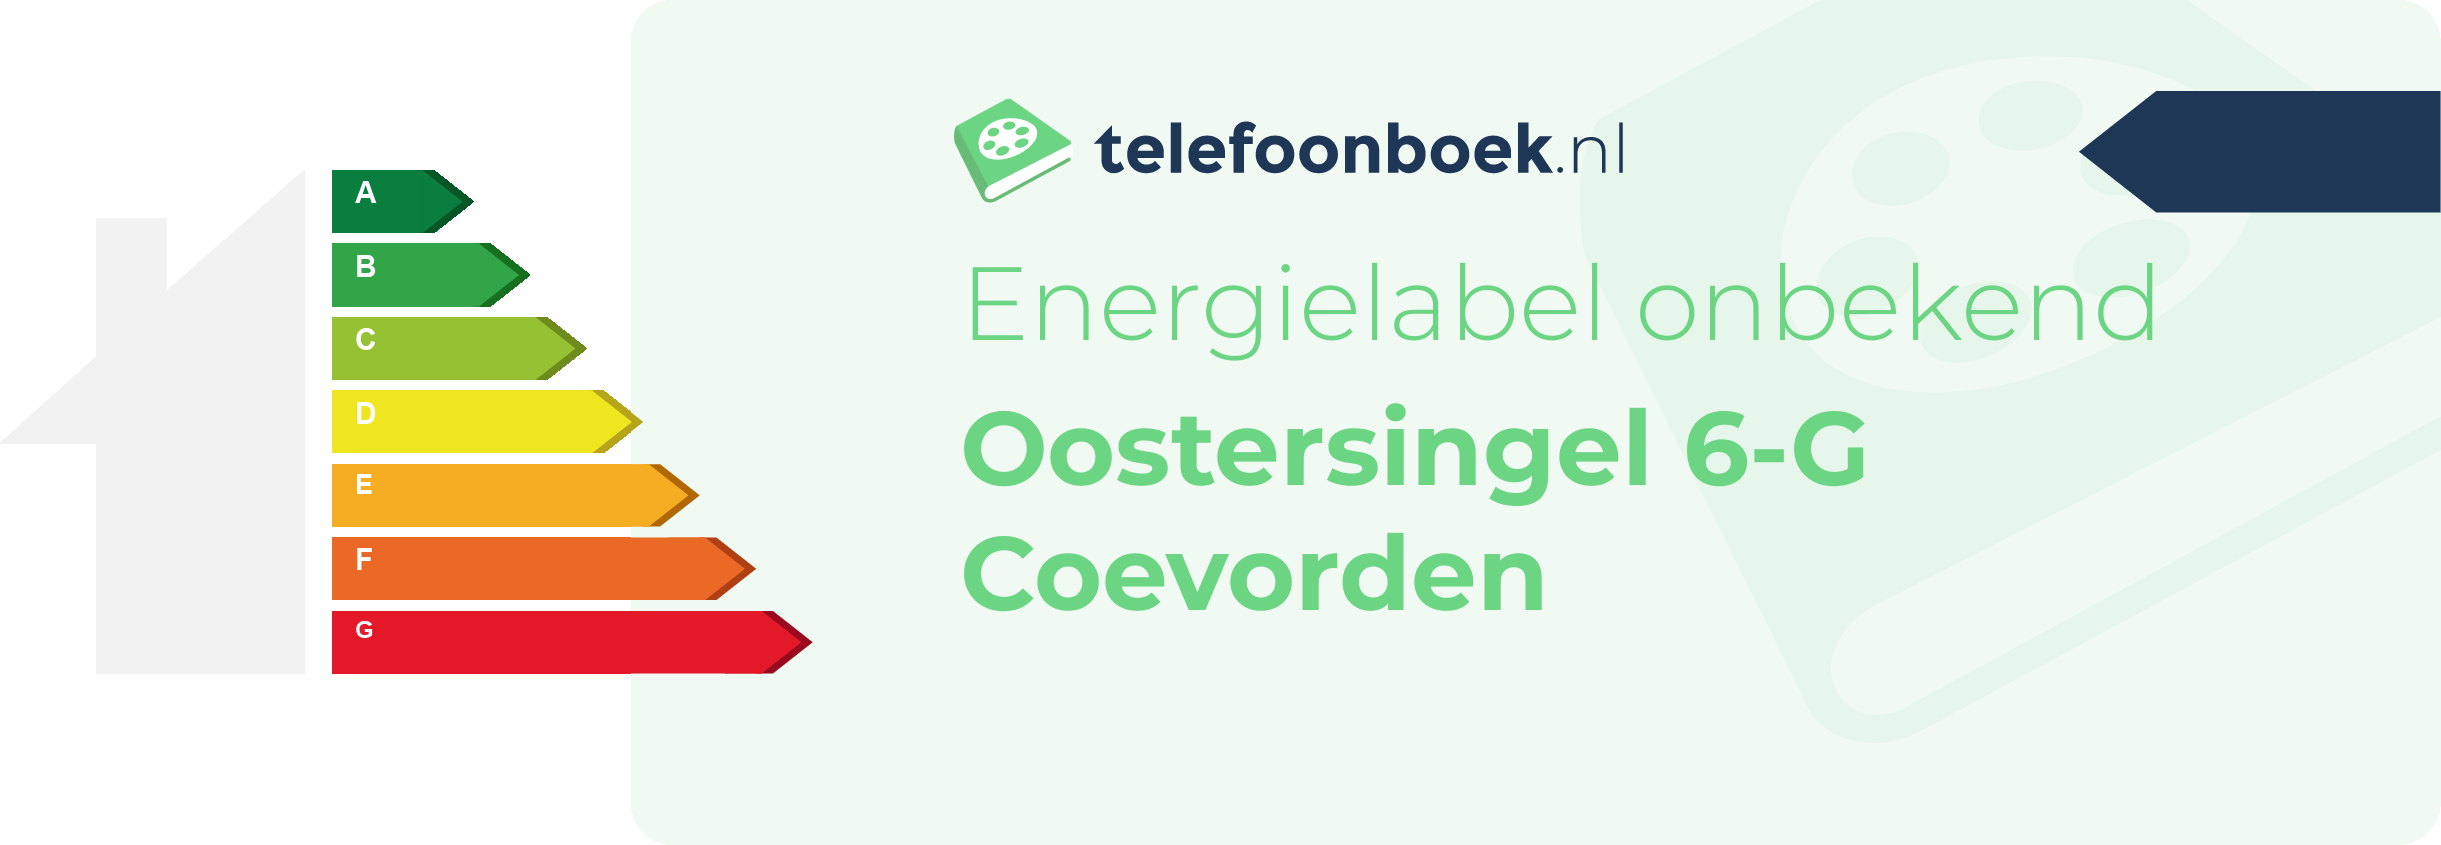 Energielabel Oostersingel 6-G Coevorden